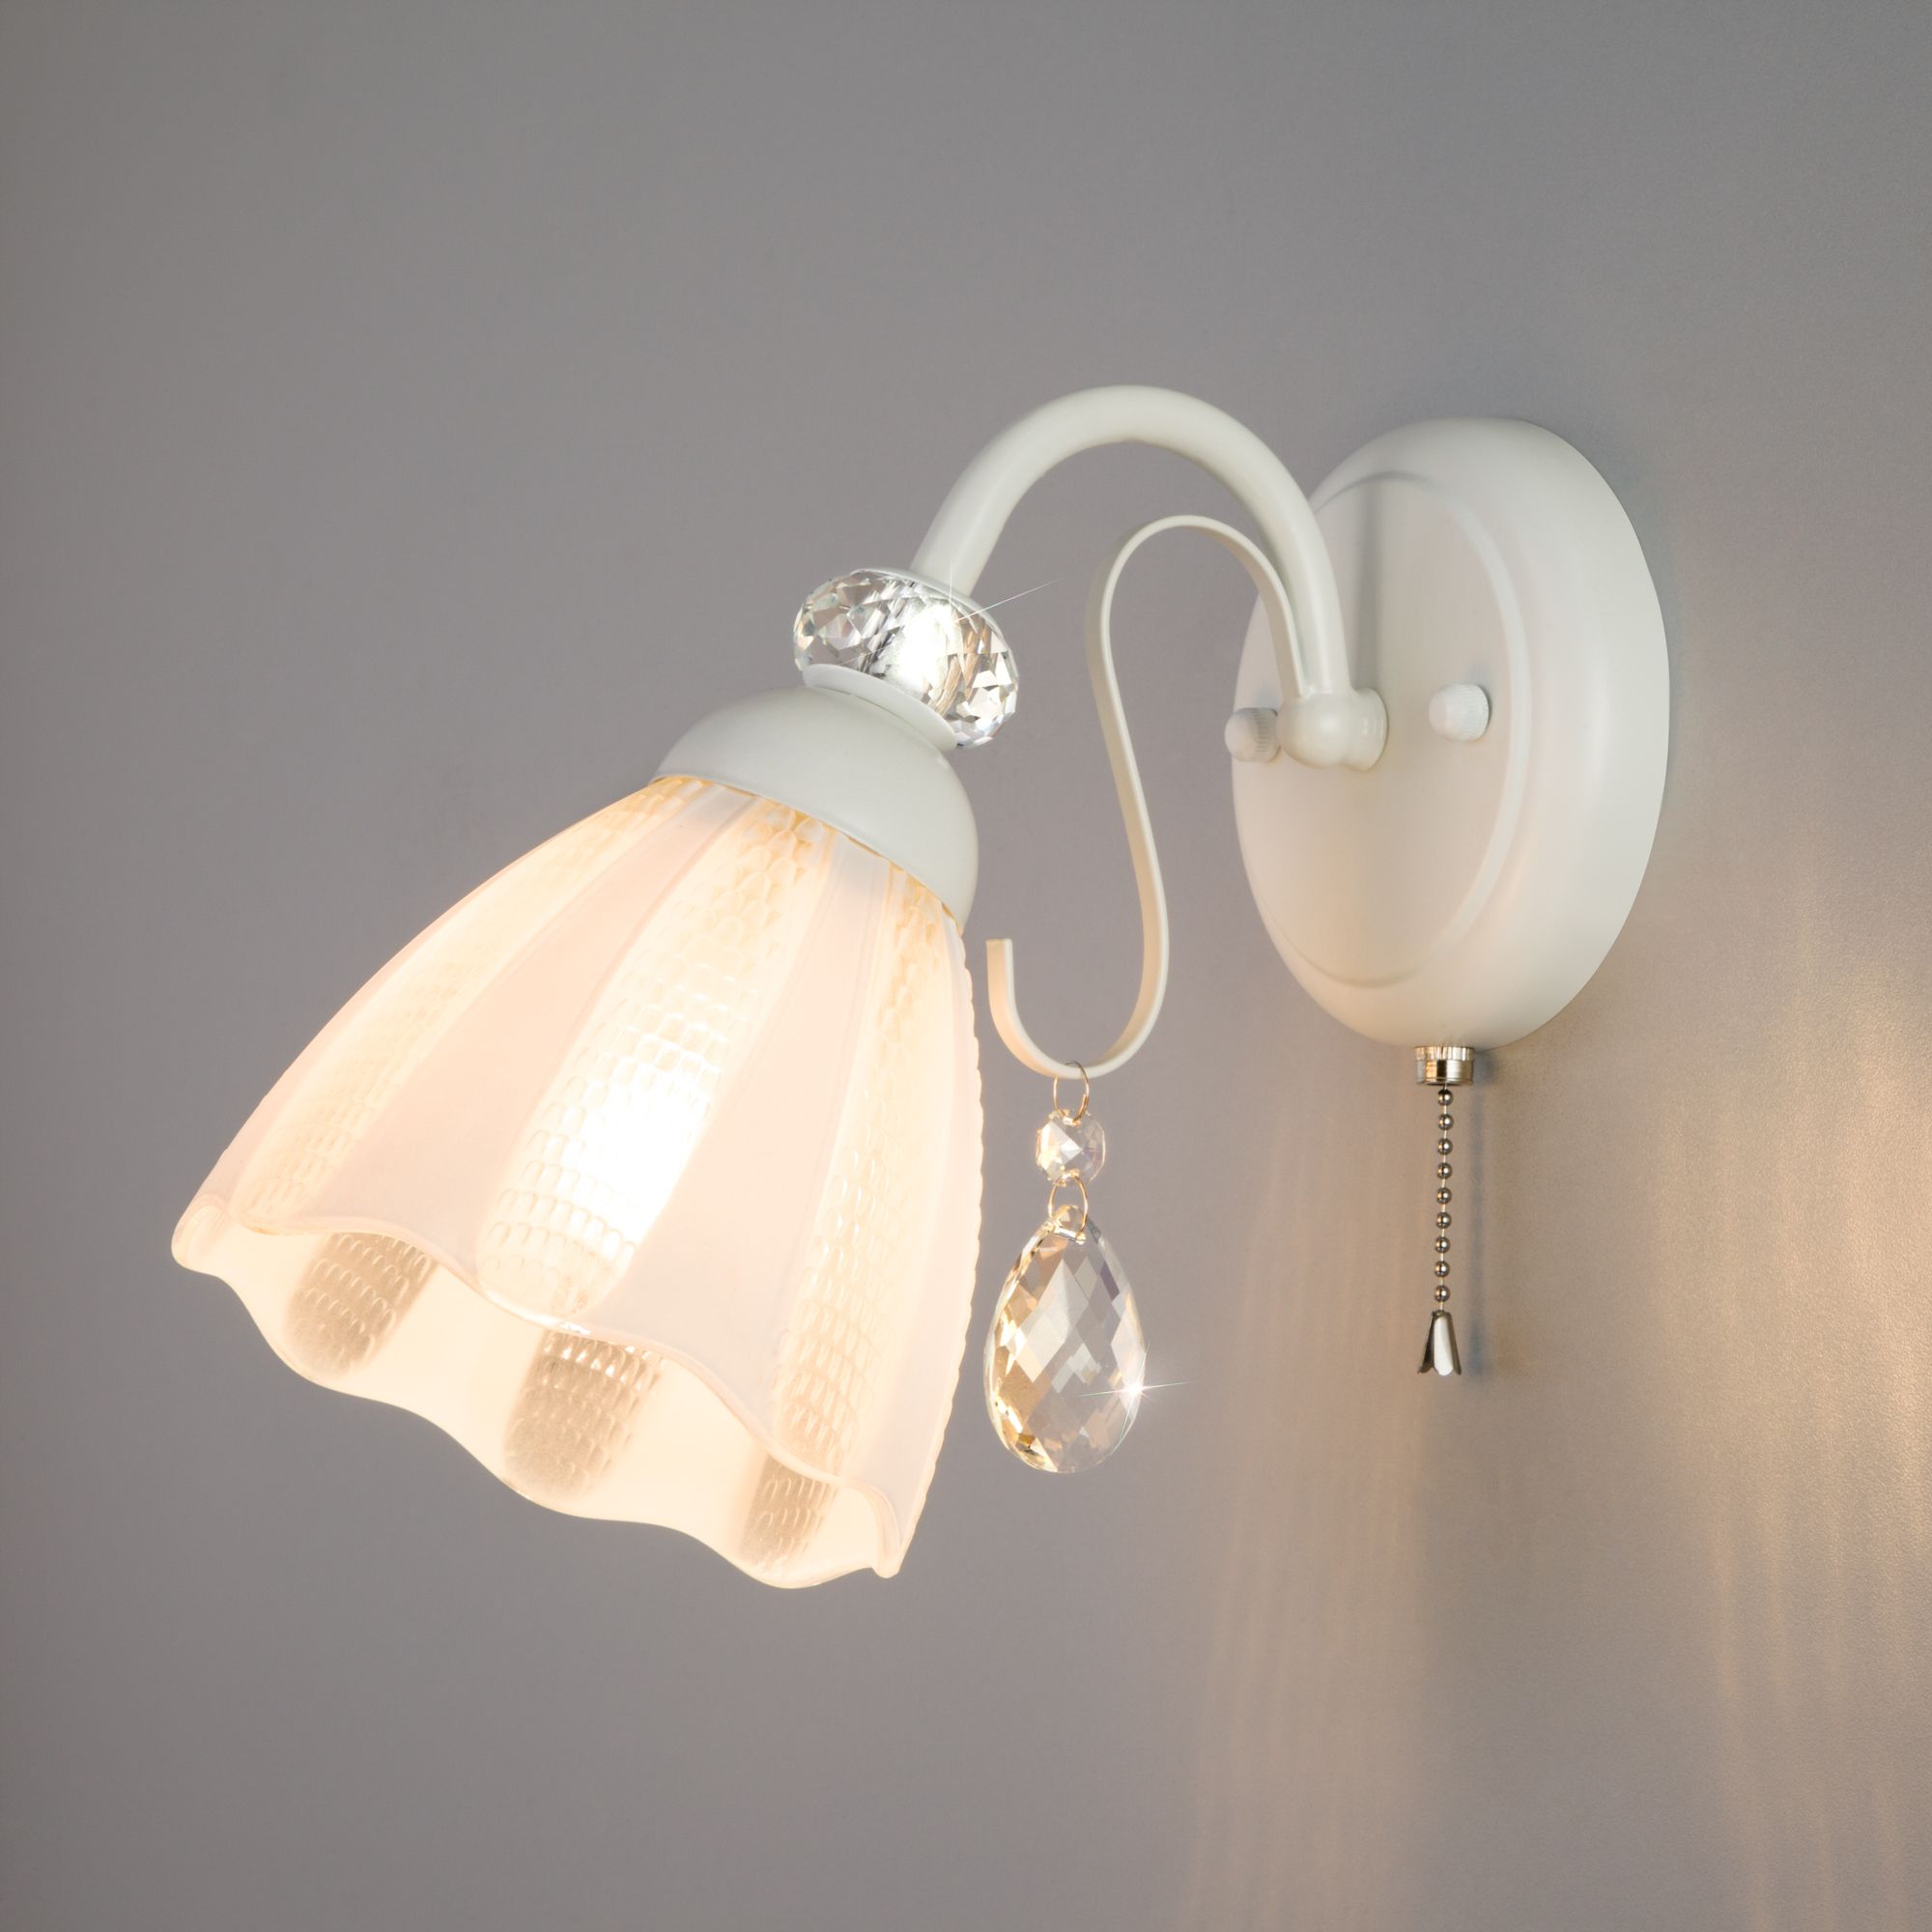 Настенный светильник со стеклянным плафоном Eurosvet Floranse 30155/1 белый. Фото 2